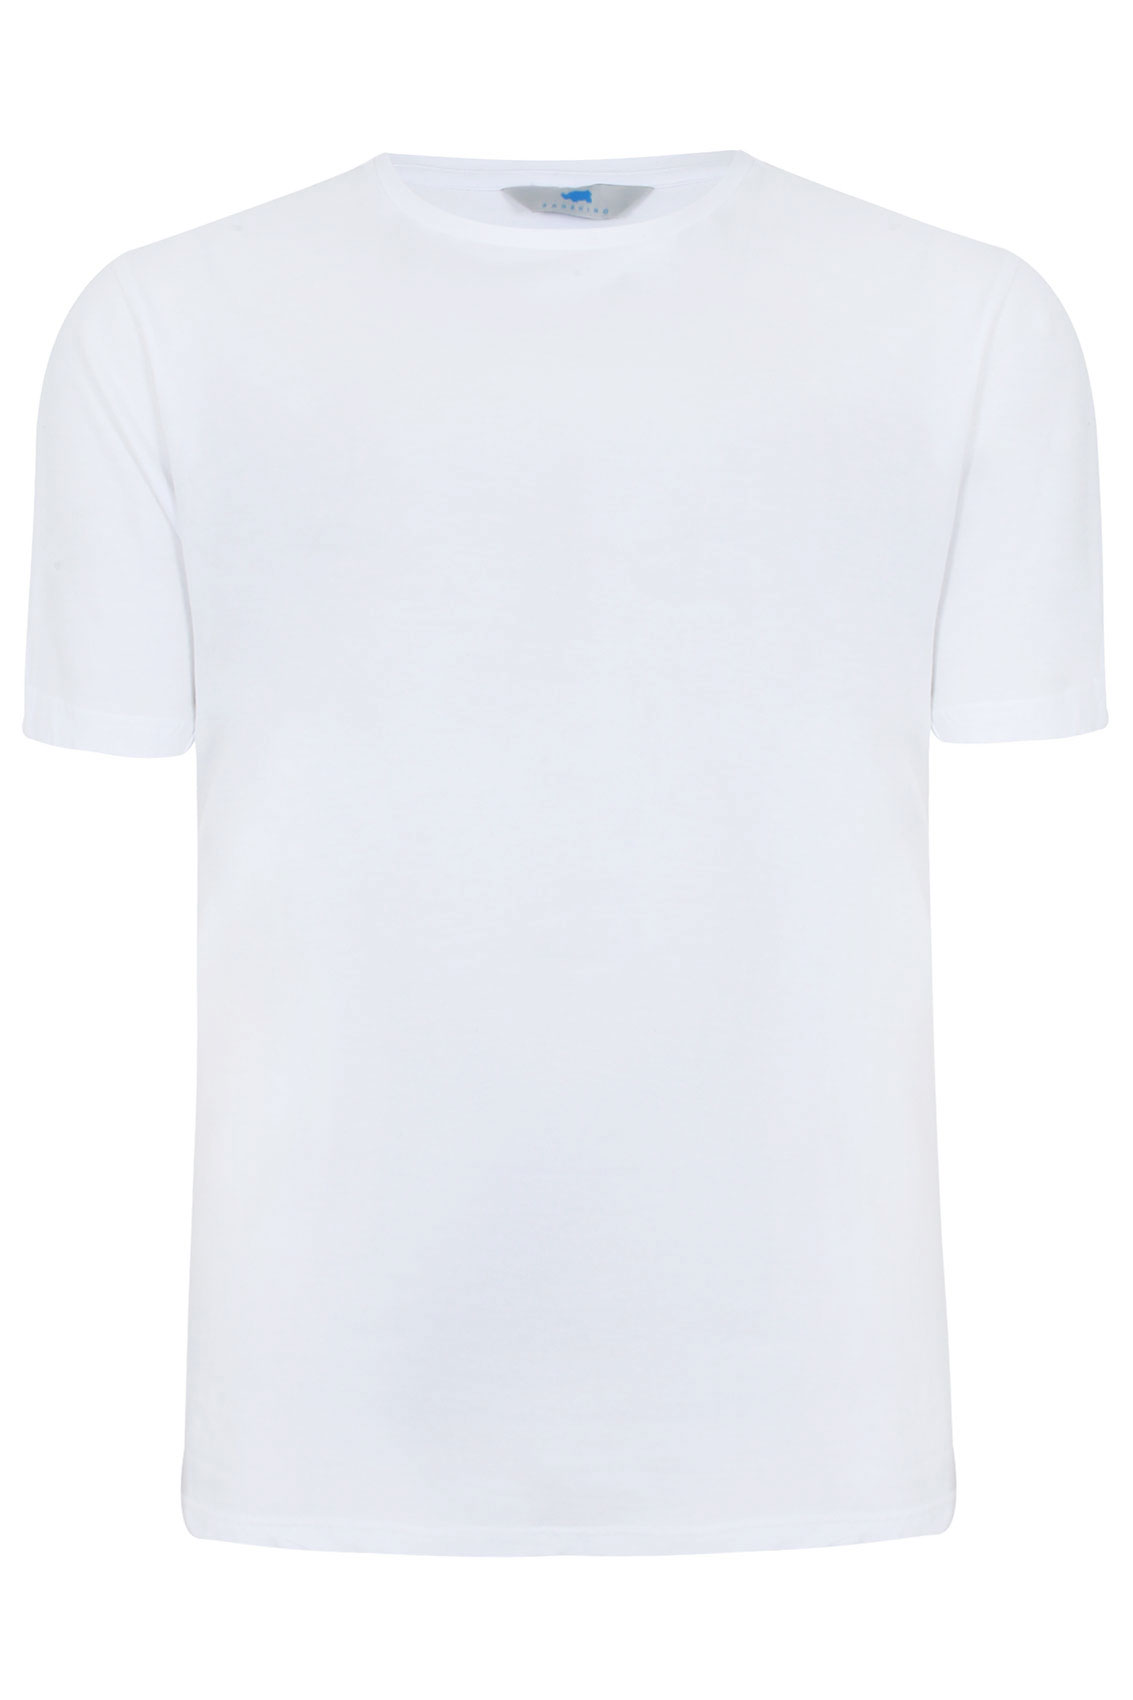 BadRhino White Basic Plain Crew Neck T-Shirt Extra large sizes M,L,XL ...